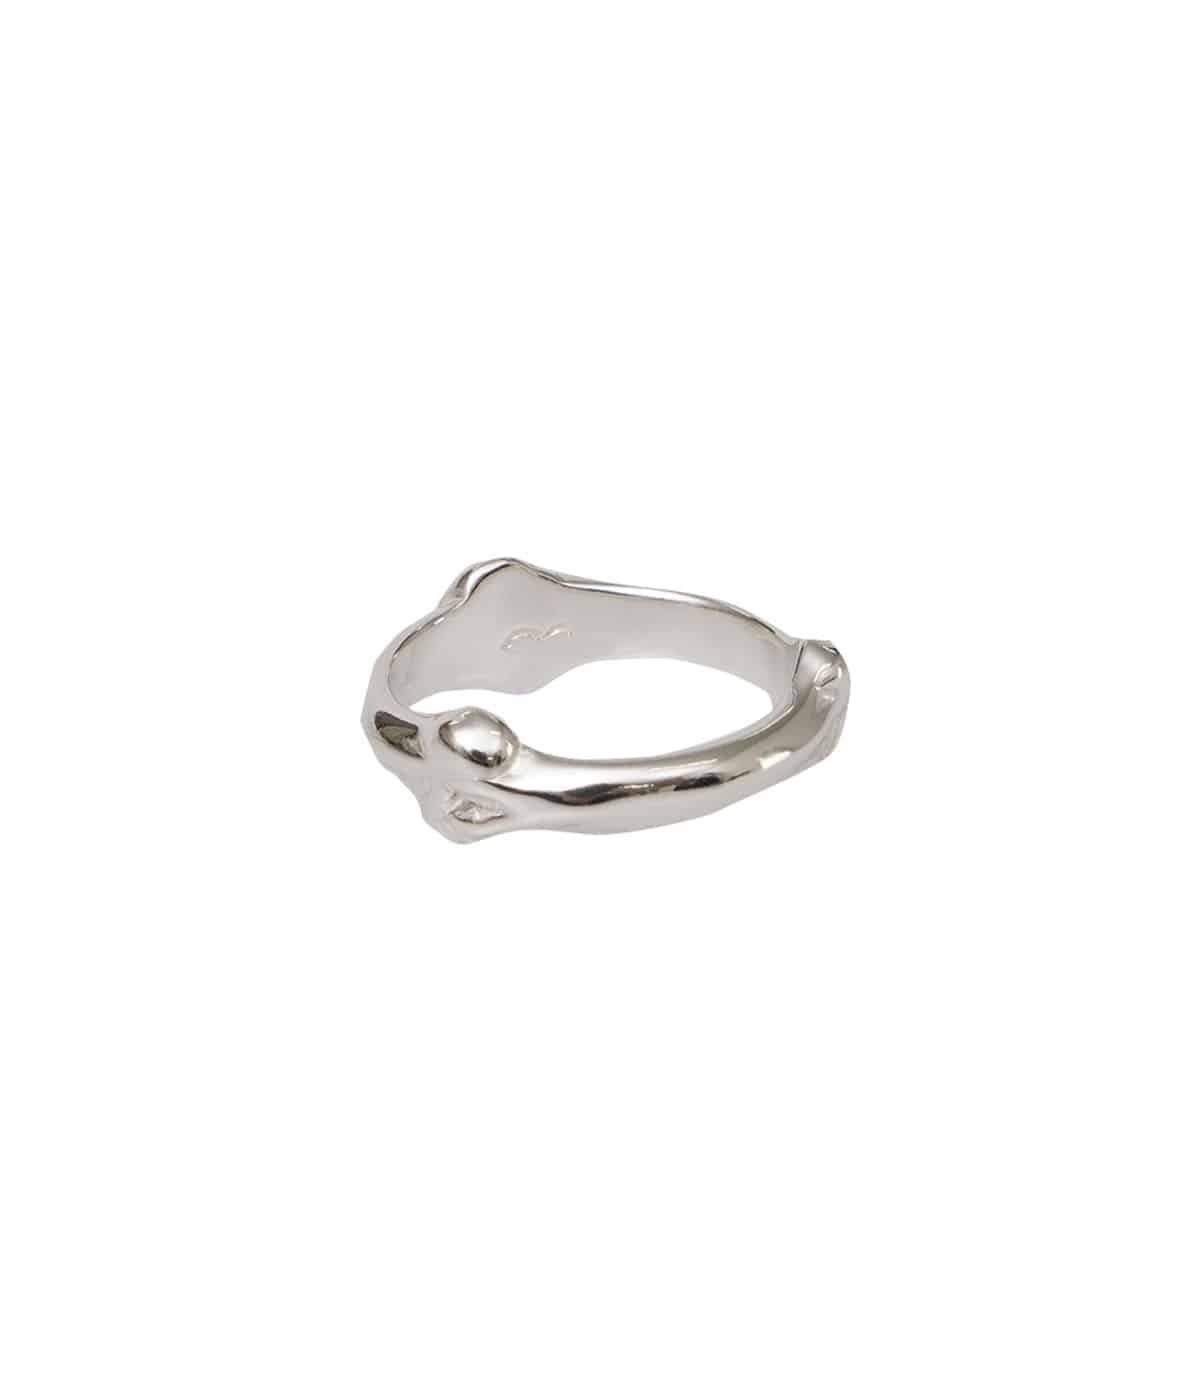 bone shaped band ring.